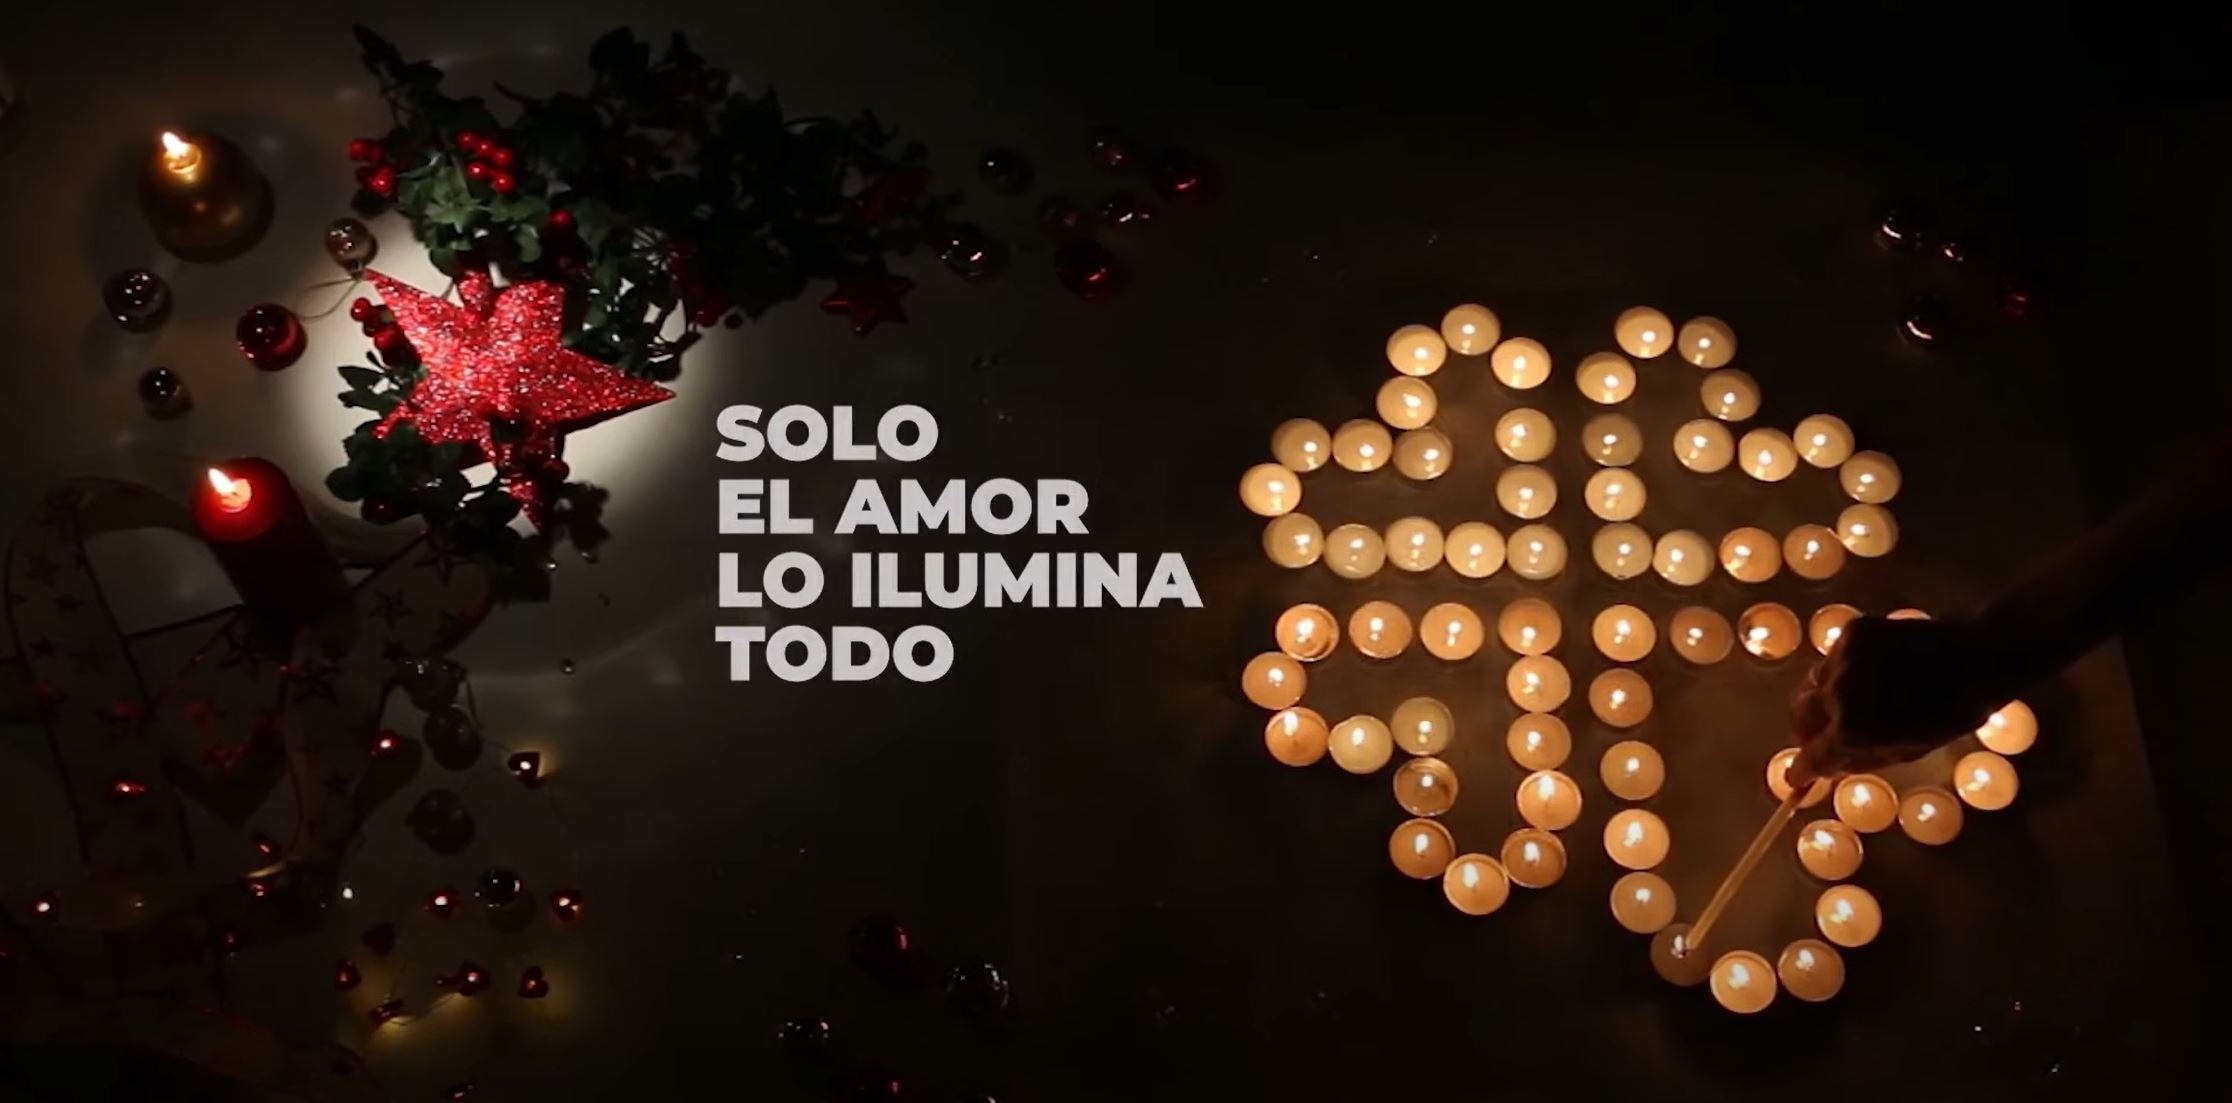 Mutua Universal se adhiere a la campaña "Solo el amor lo ilumina todo" de Cáritas Española